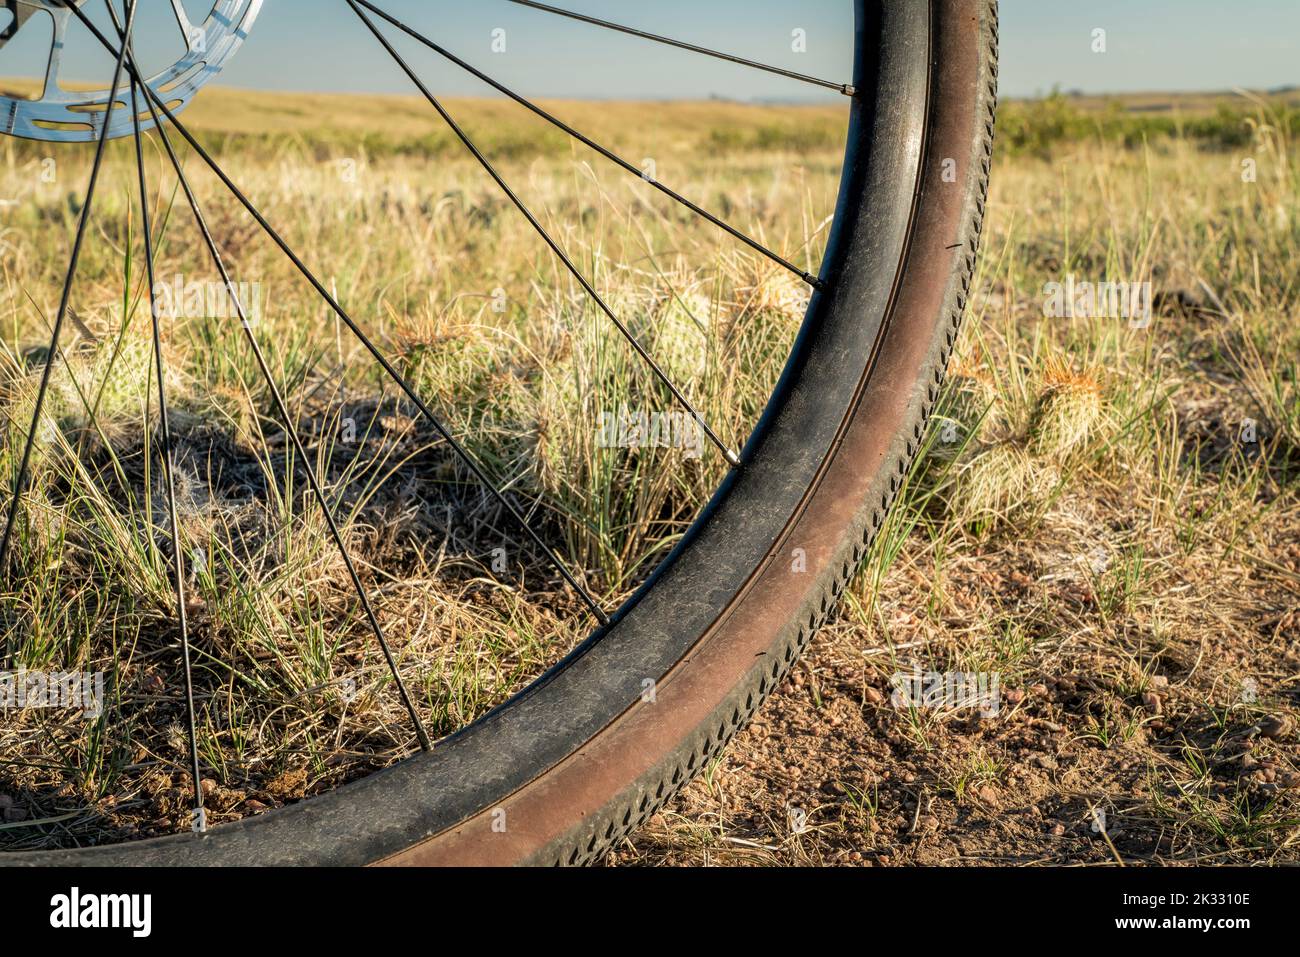 rueda delantera de bicicleta de grava en un sendero de pradera con cactus espigosos Foto de stock